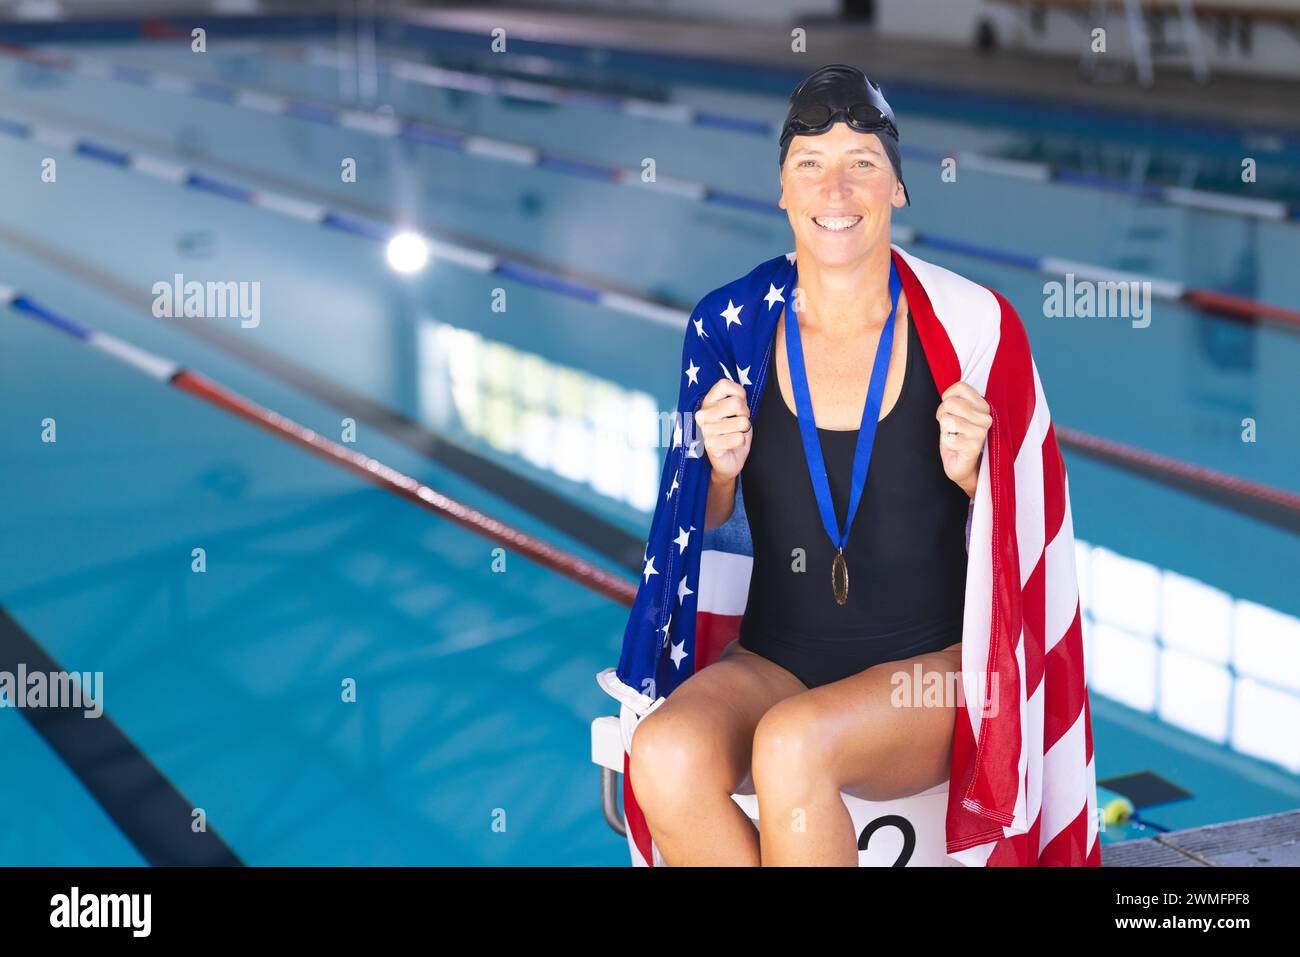 Fier athlète enveloppé dans le drapeau américain dans une piscine avec une médaille Banque D'Images